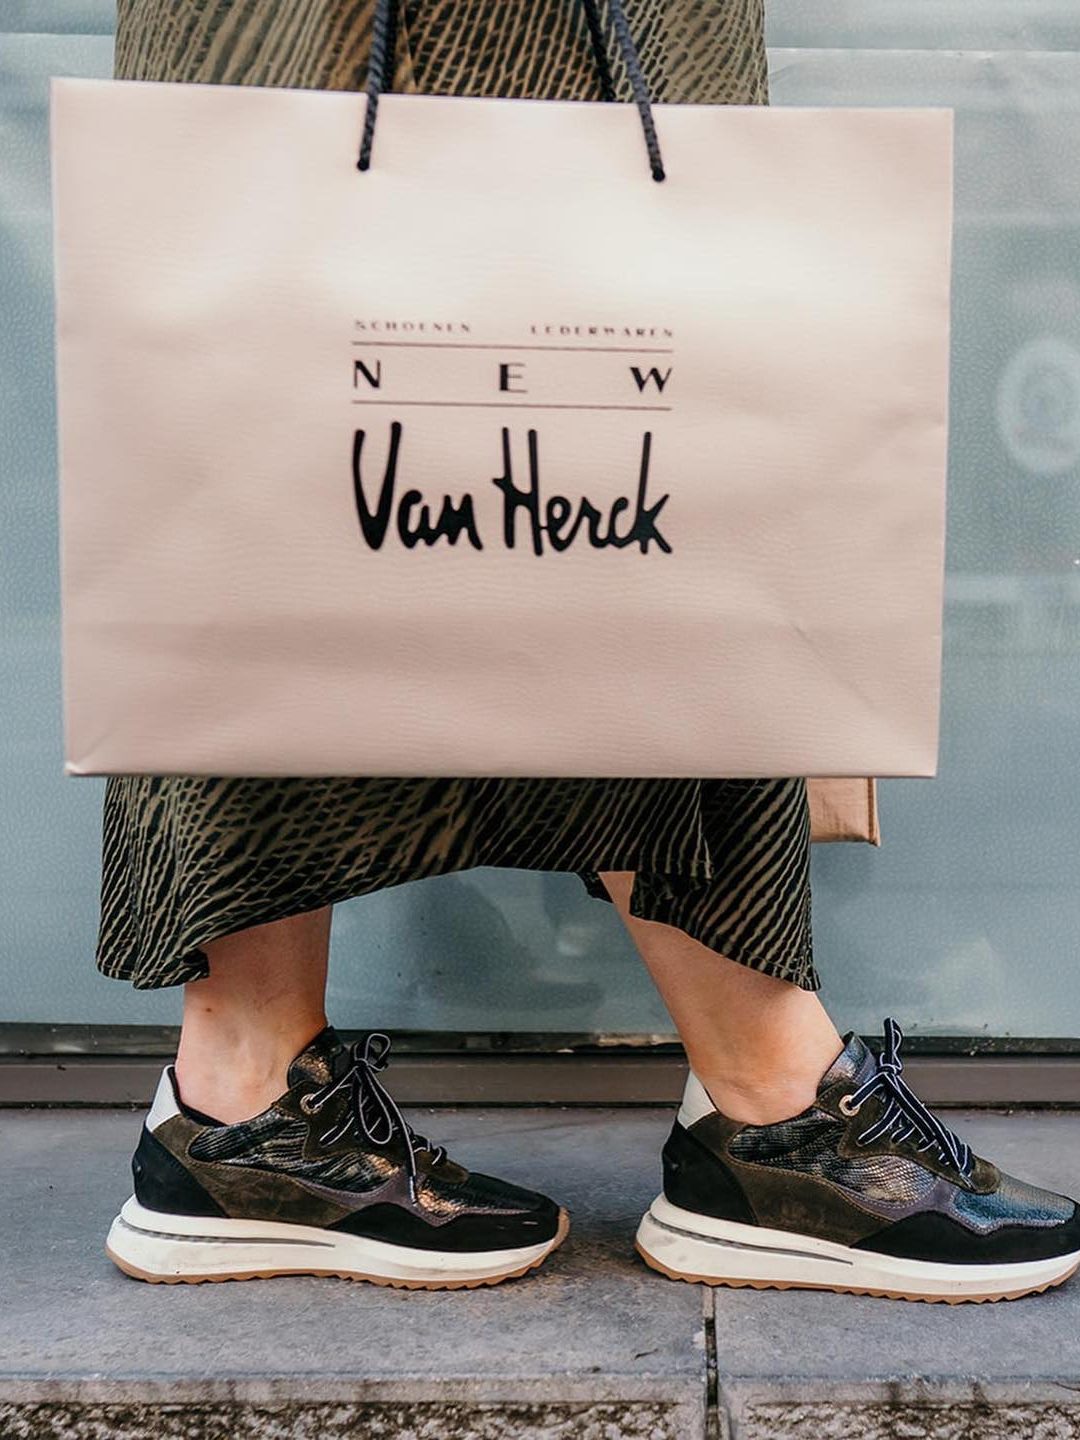 New Van Herck, passie voor schoenen en comfort - Turnhout City Guide